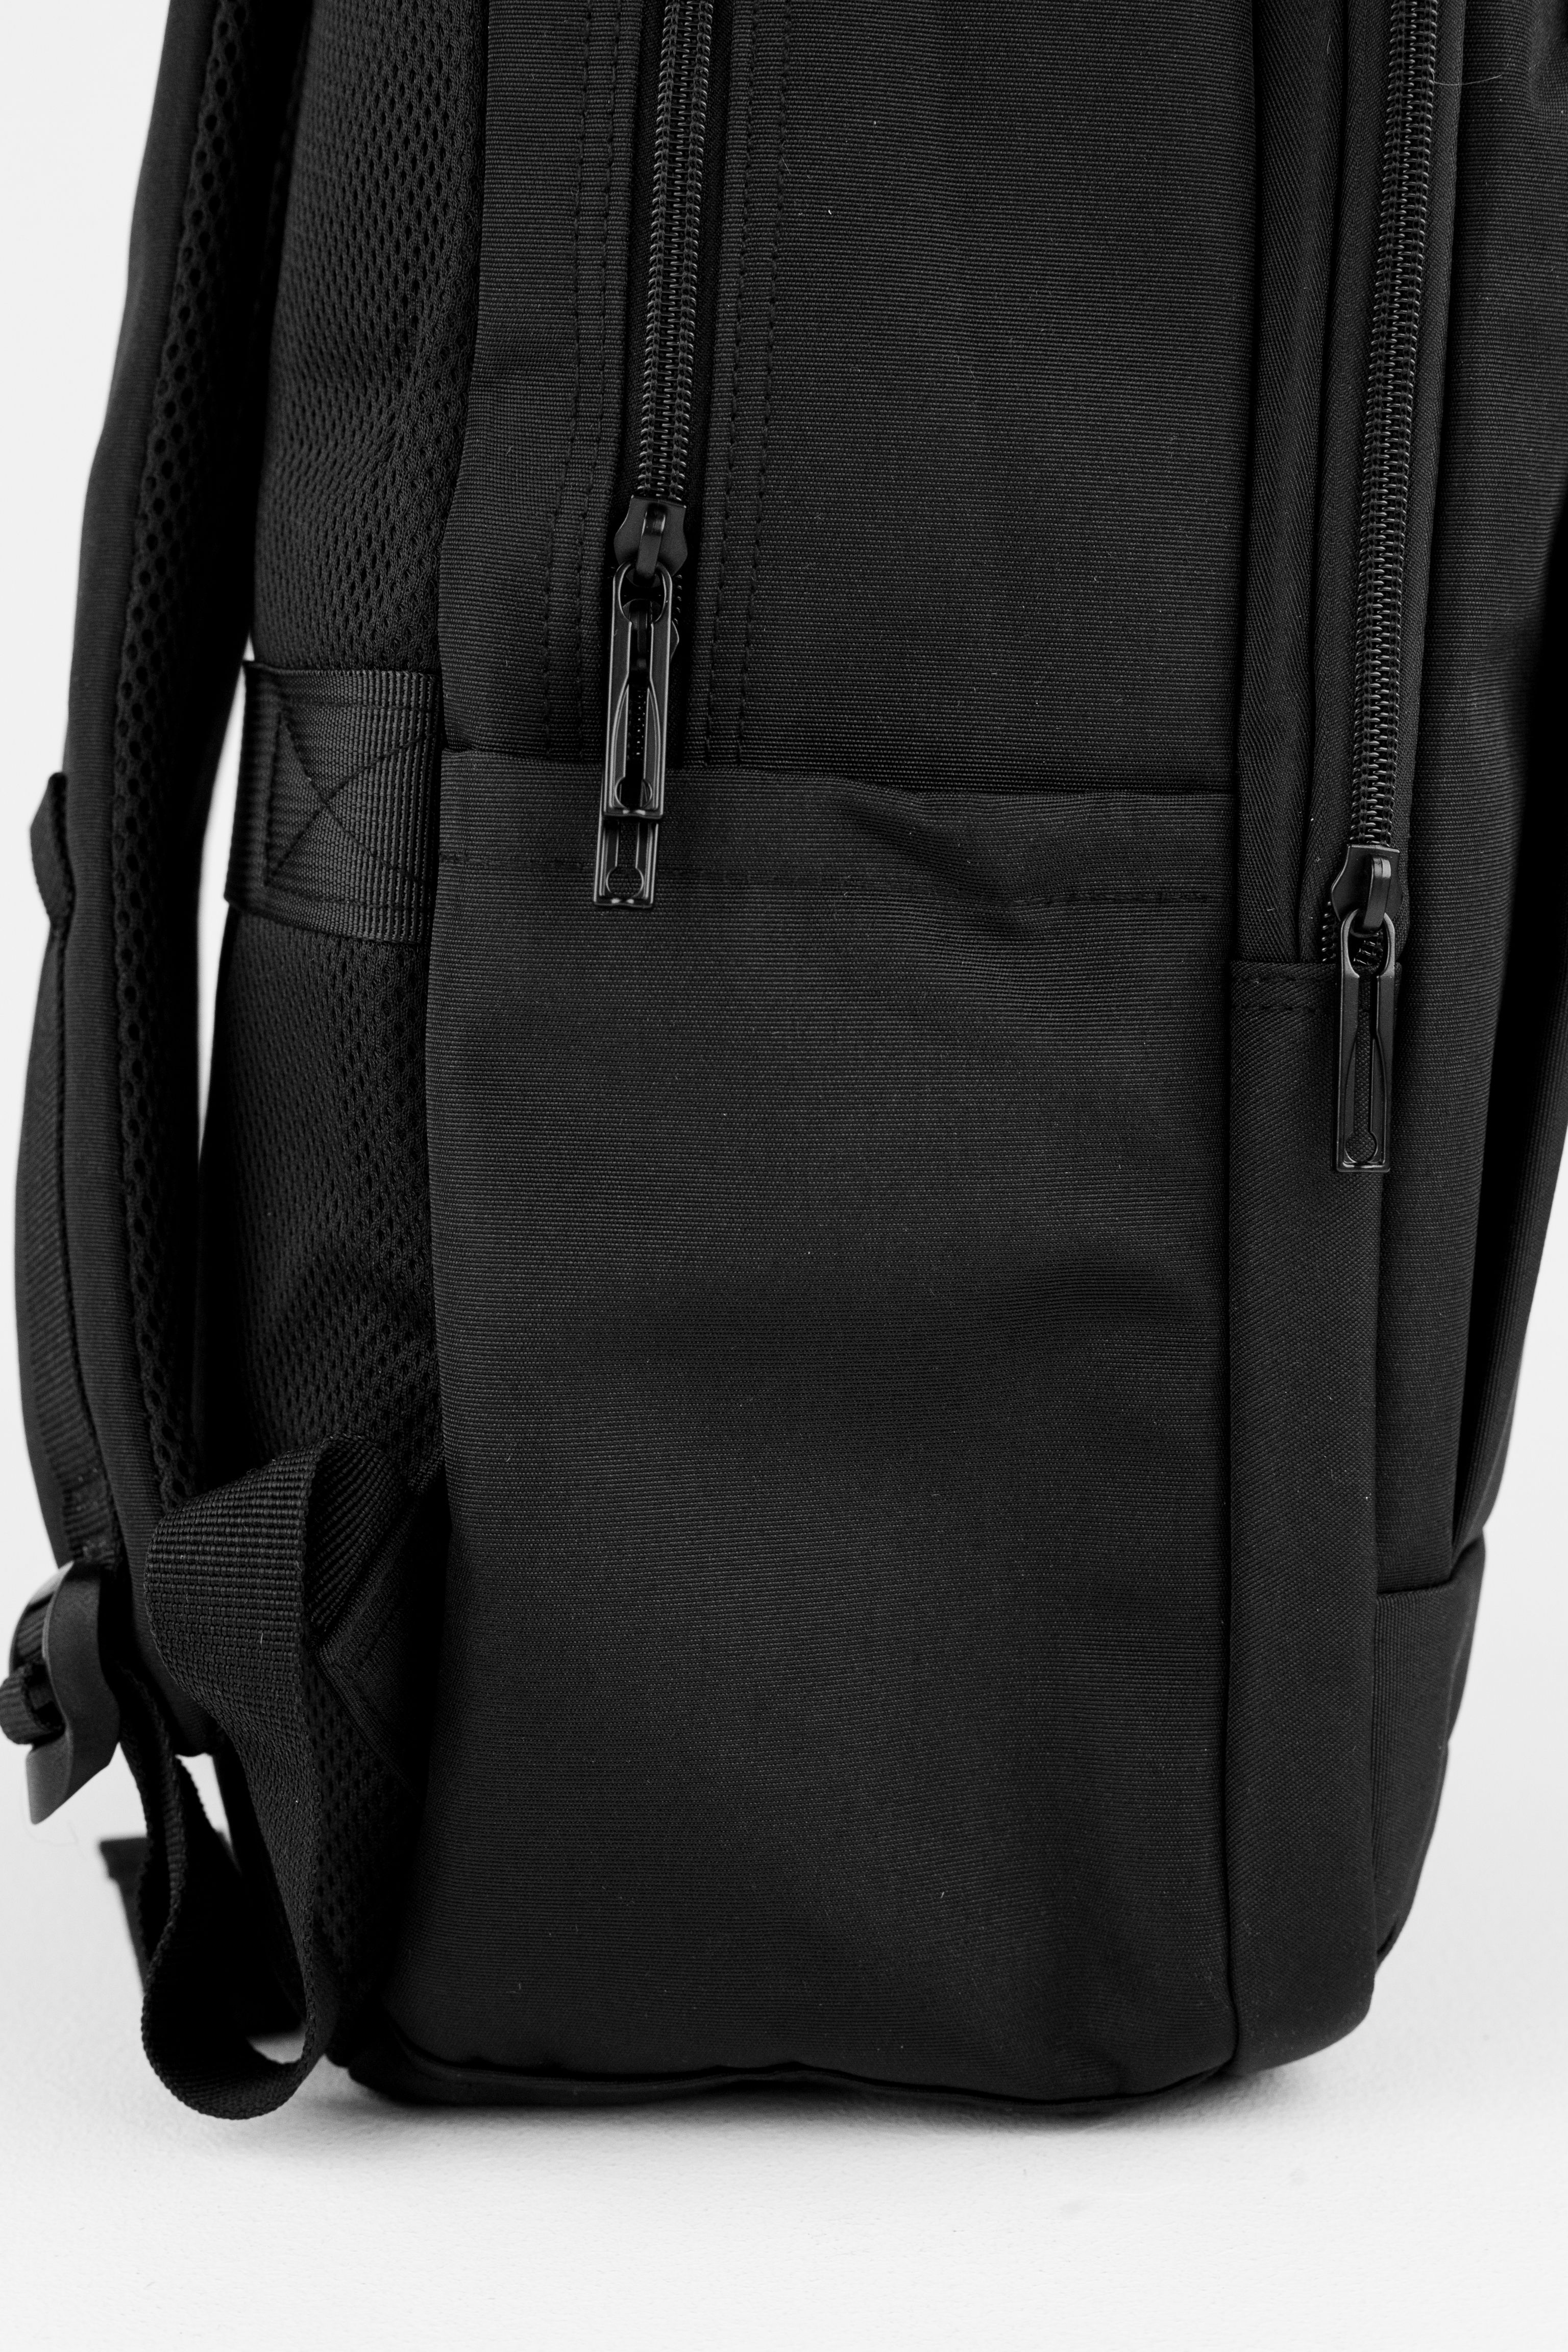 Рюкзак черный DUOYANG школьный подростковый для учебы и спорта - фото 8